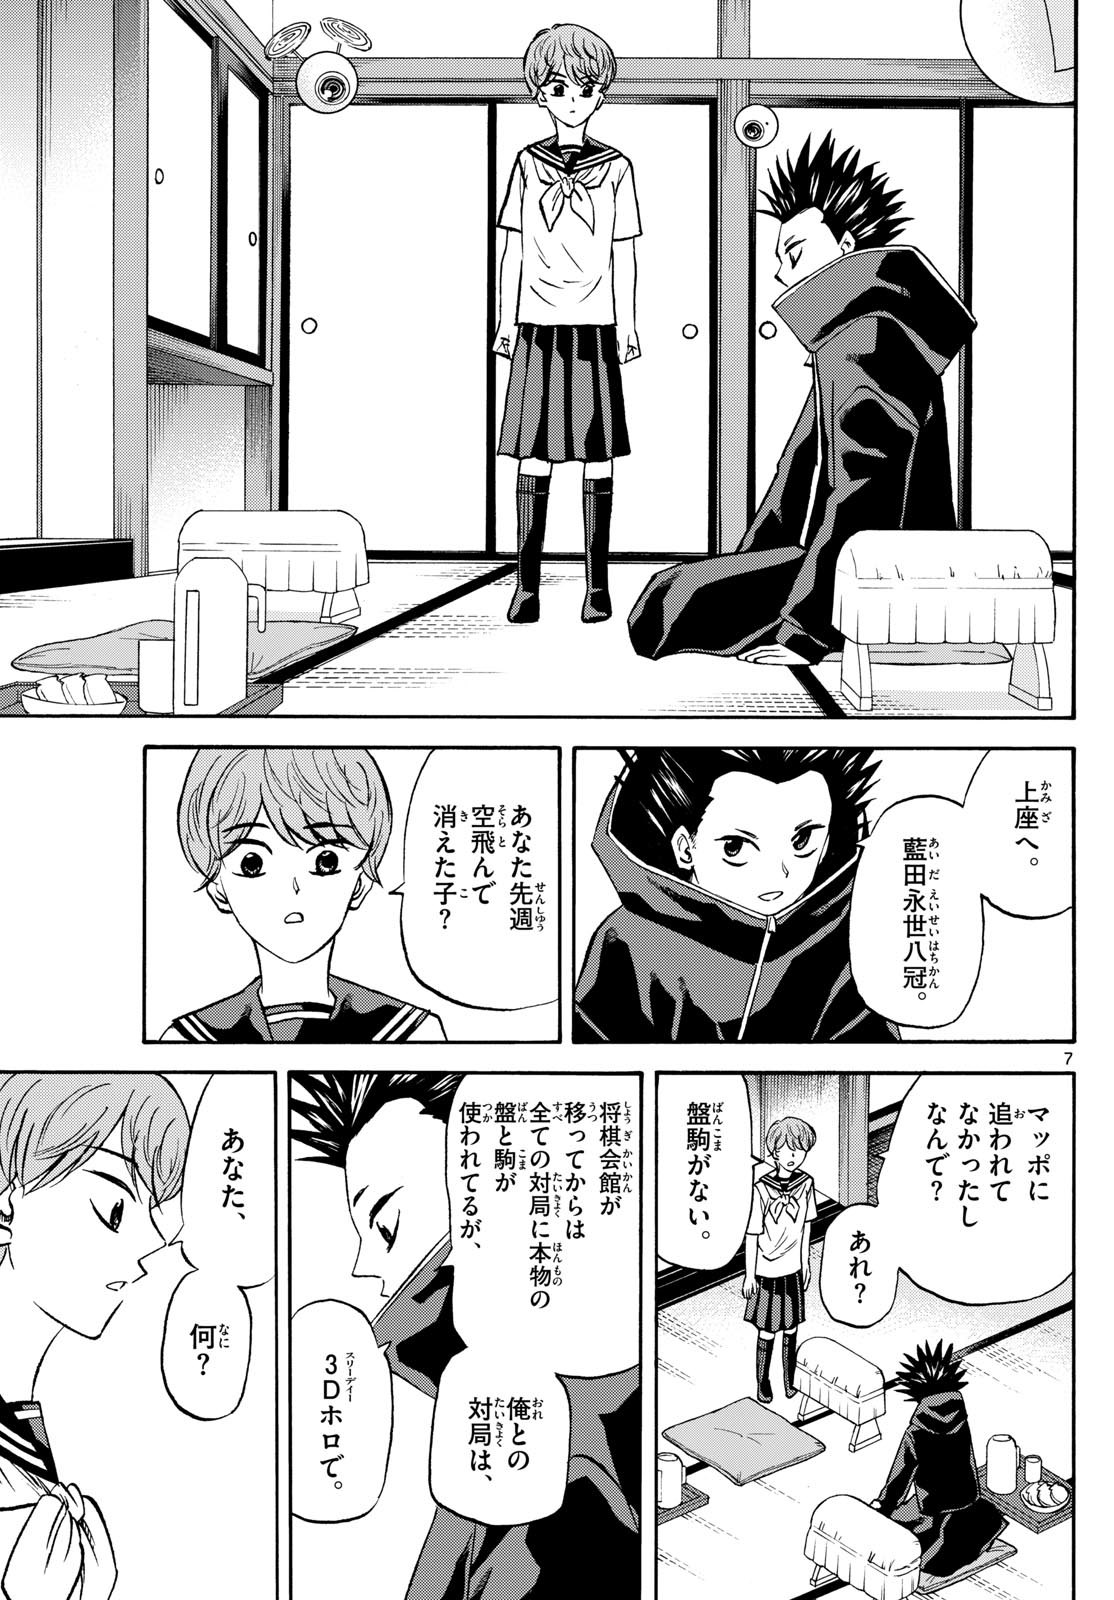 Tatsu to Ichigo - Chapter 191 - Page 7